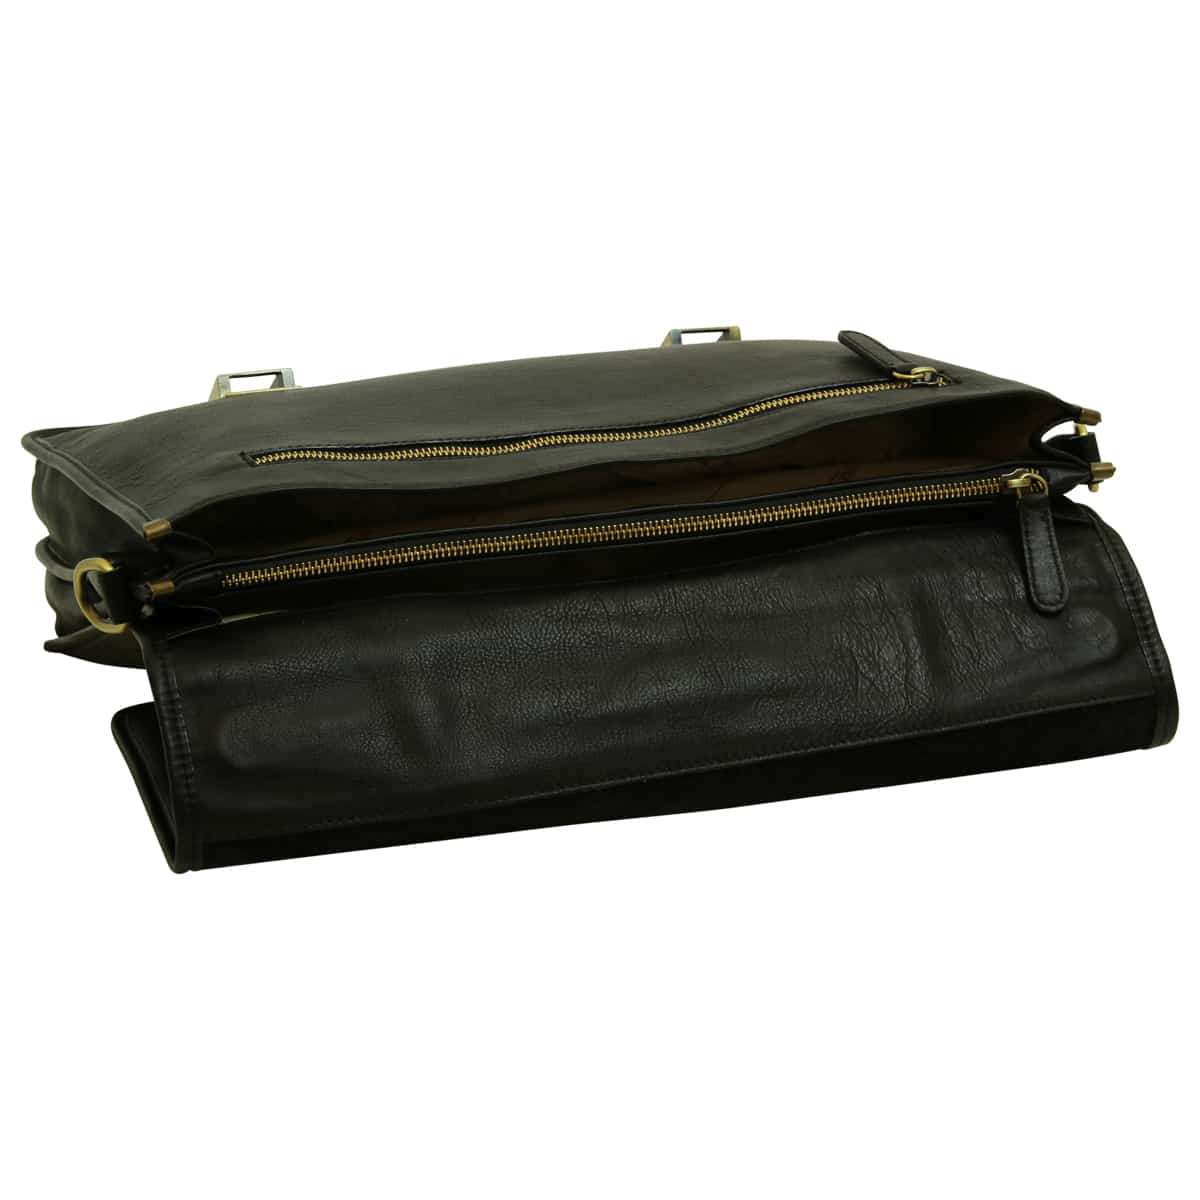 Soft Calfskin Leather Briefcase with shoulder strap - Black | 030991NE | EURO | Old Angler Firenze